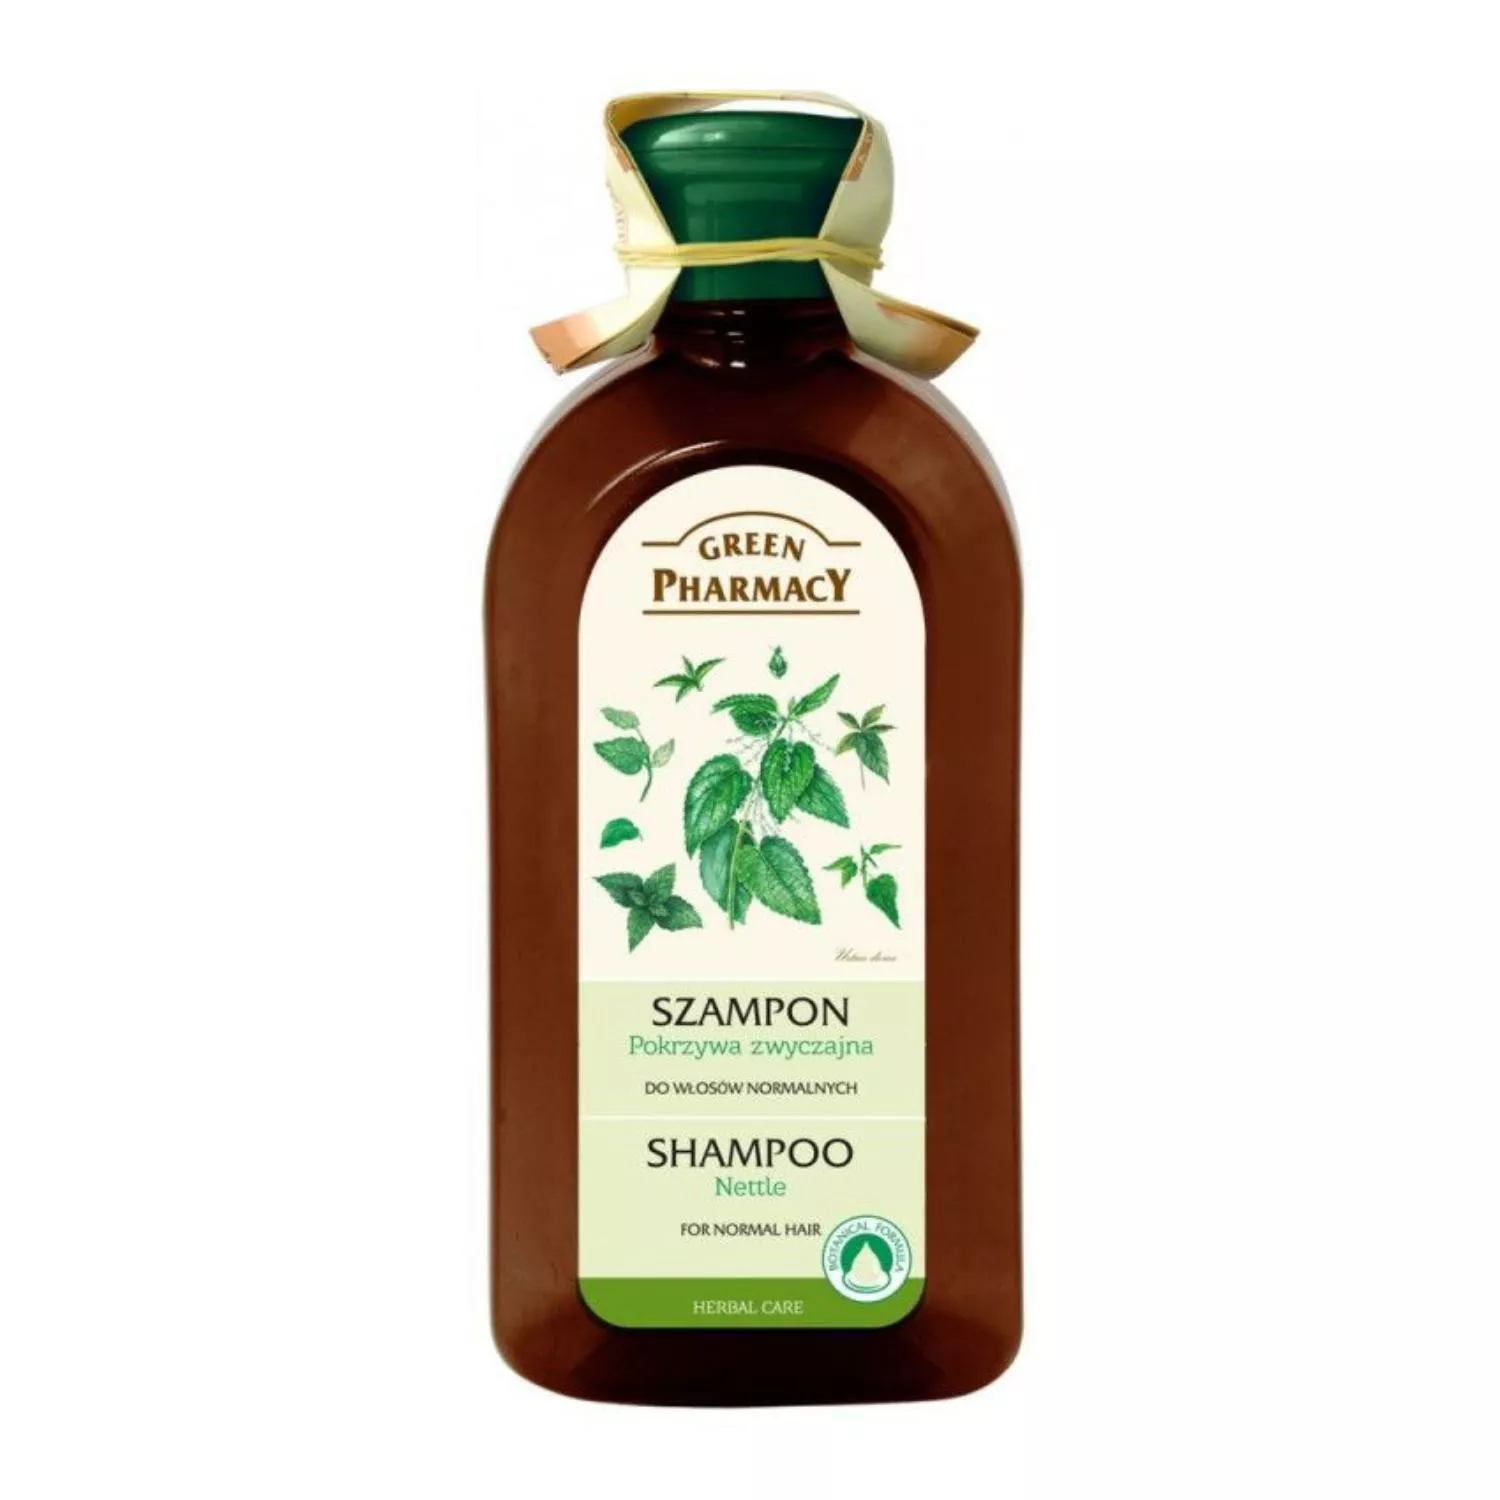 szampon green pharmacy pokrzywa